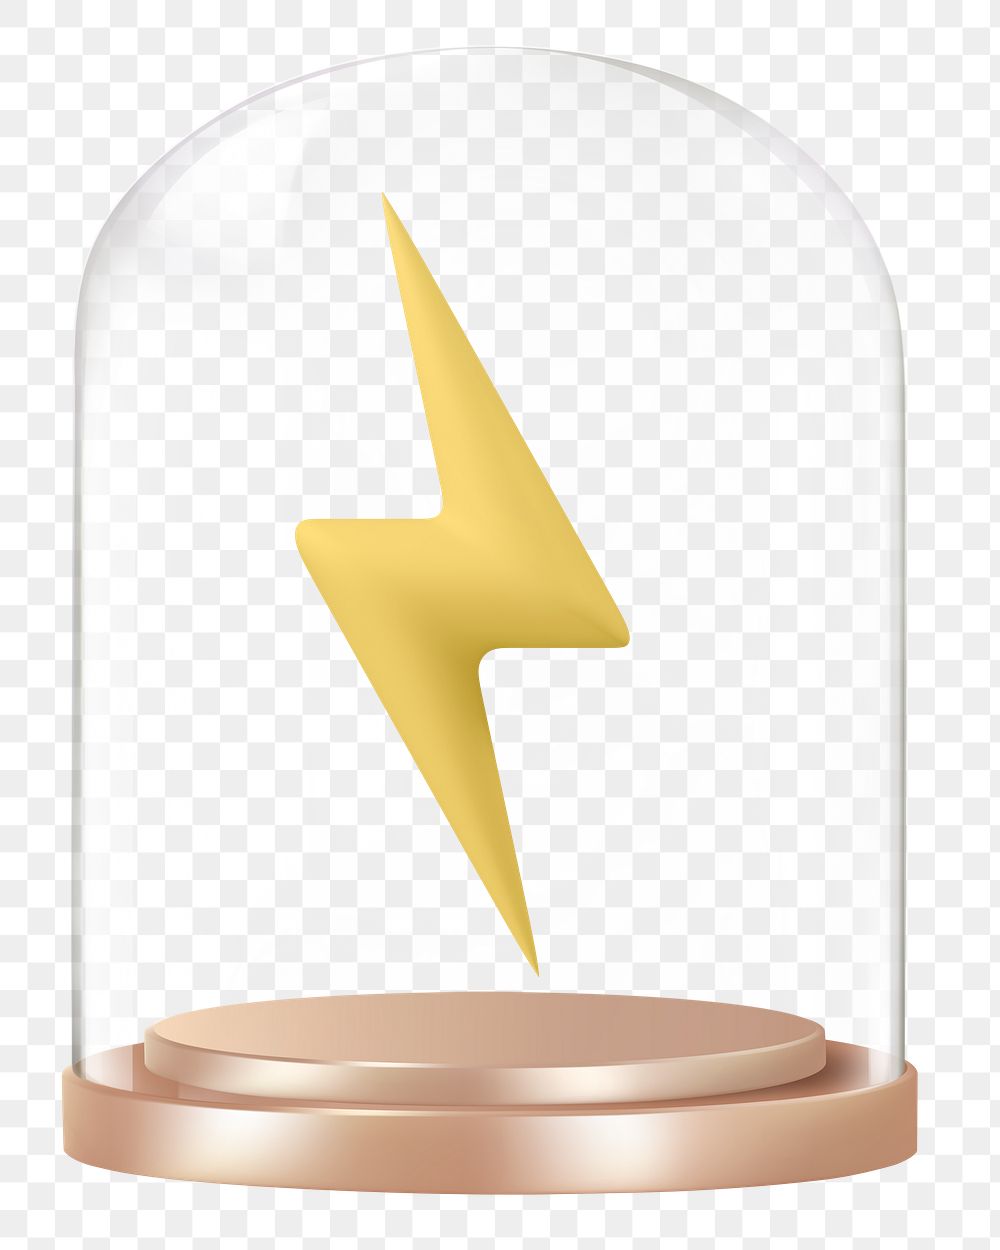 Lightning bolt png glass dome sticker,  transparent background